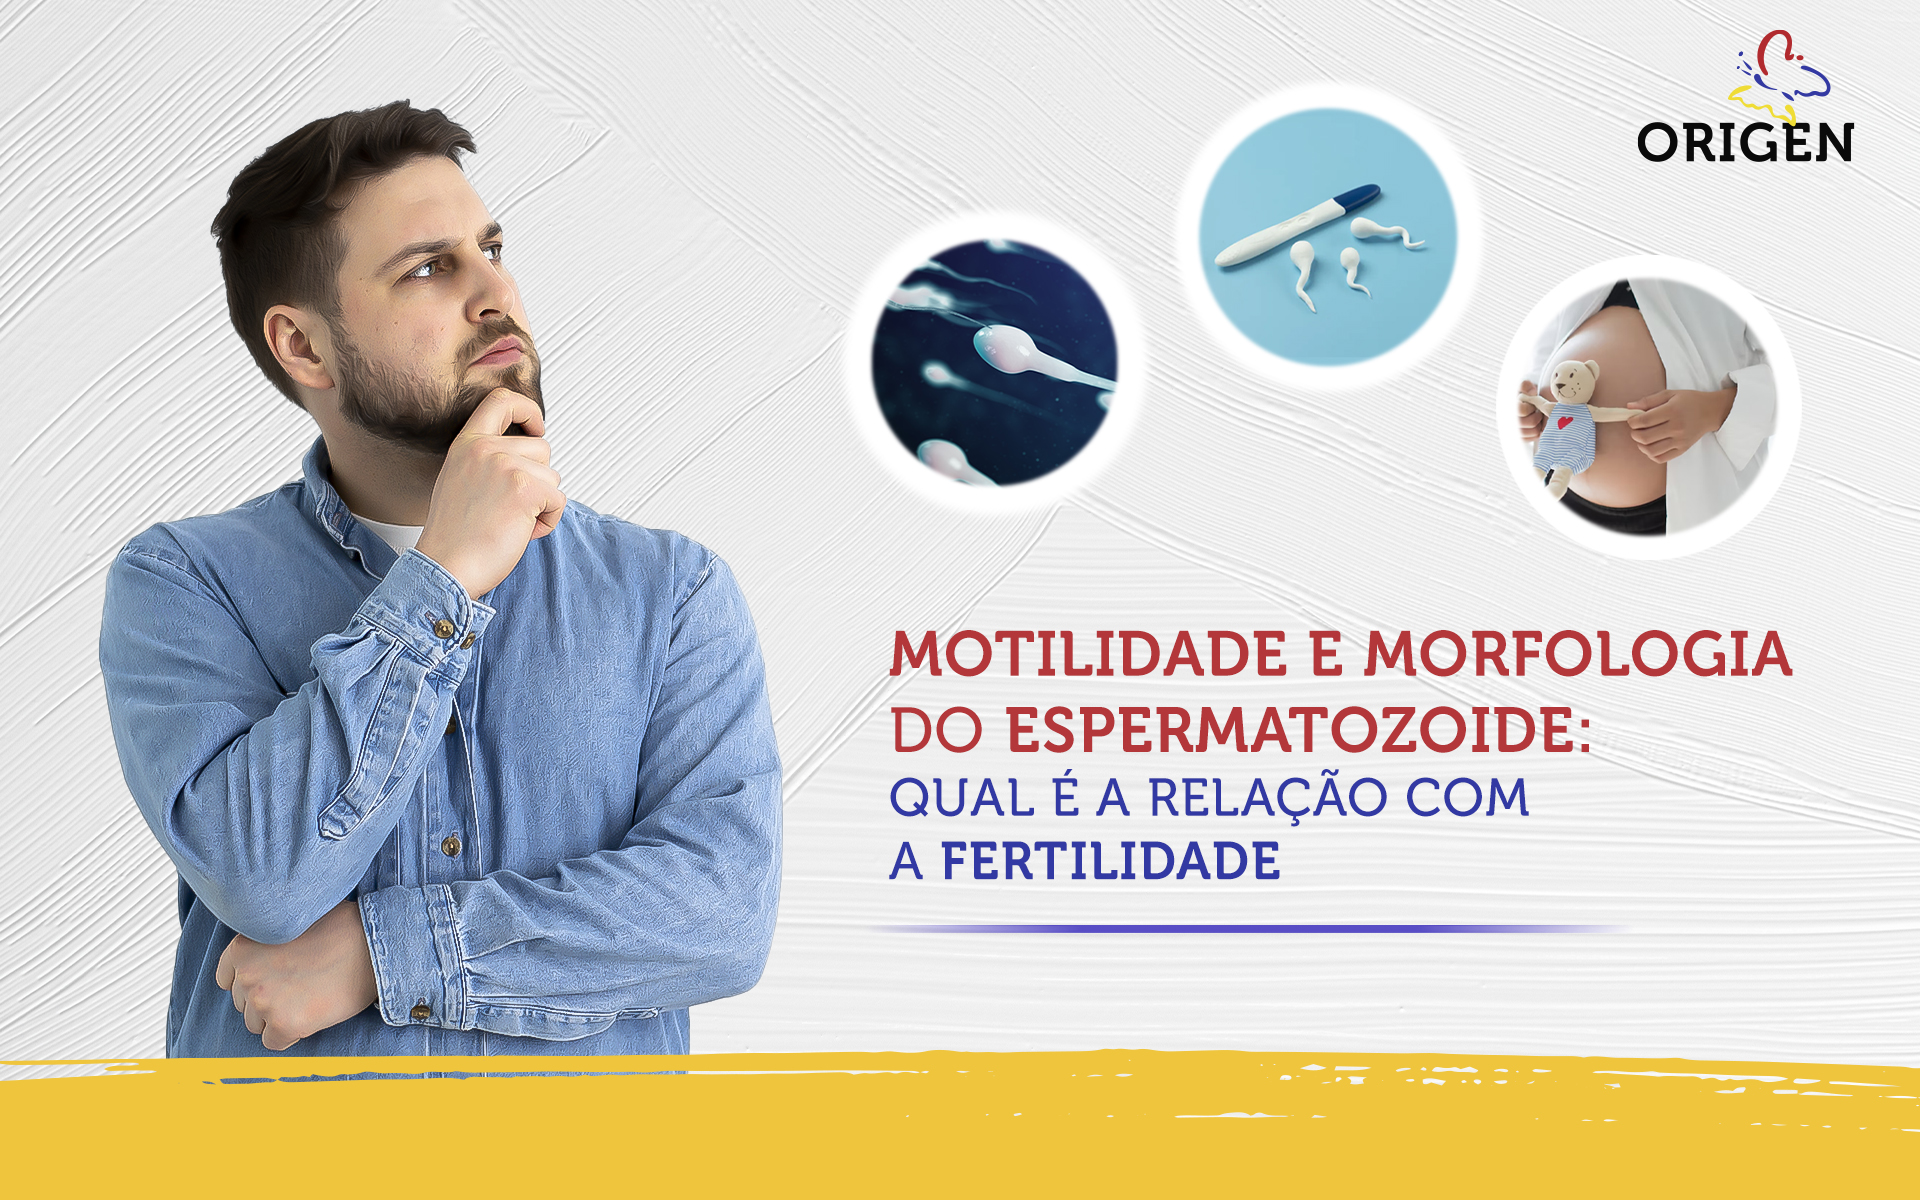 Motilidade e morfologia do espermatozoide: qual é a relação com a fertilidade masculina?